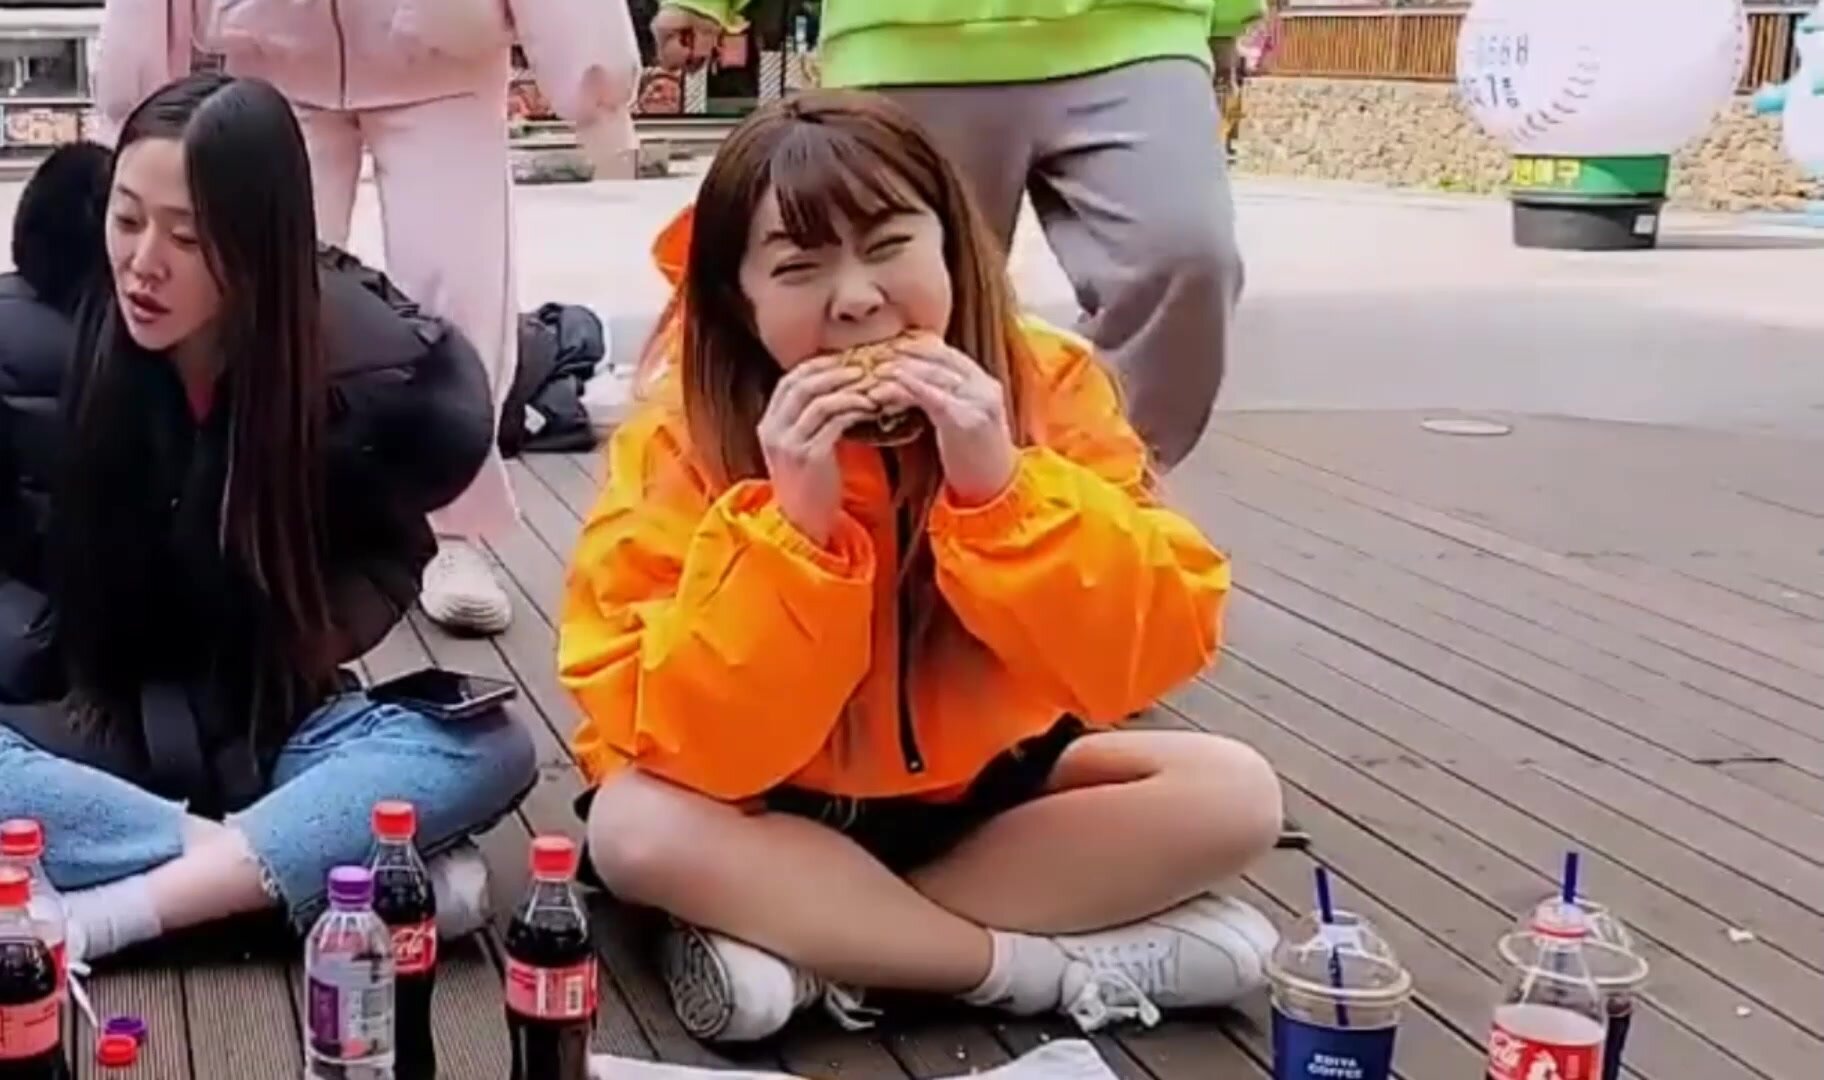 Cute Korean girl chomps down 2 burgers